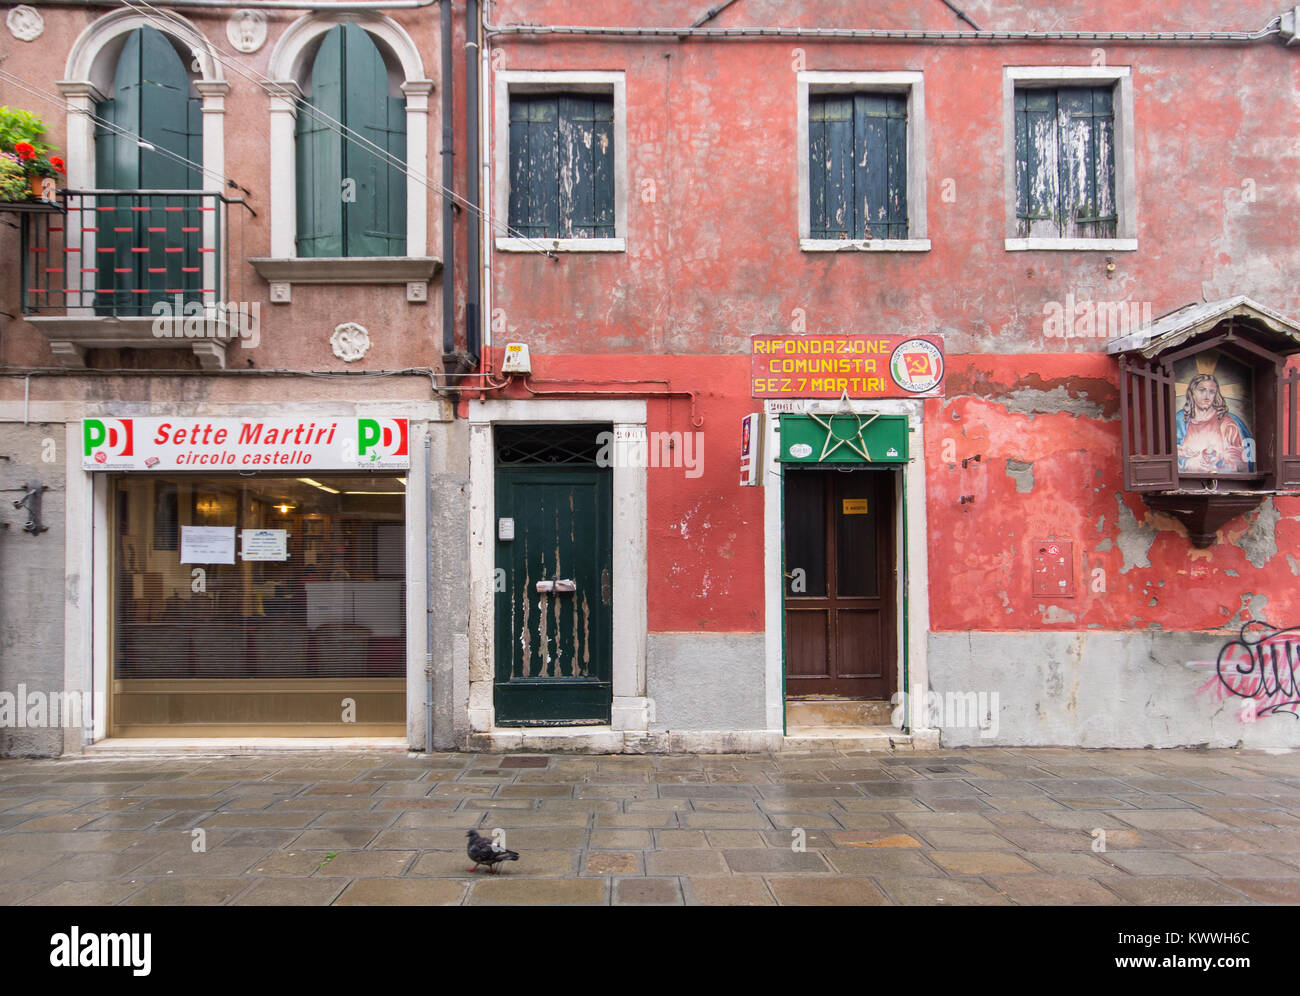 PD-demokratischen Partei und der Kommunistischen Partei Italiens Büros Seite an Seite mit einem Bildnisse mit einem votive painting von Jesus Christus im Zentrum von Venedig, Italien Stockfoto